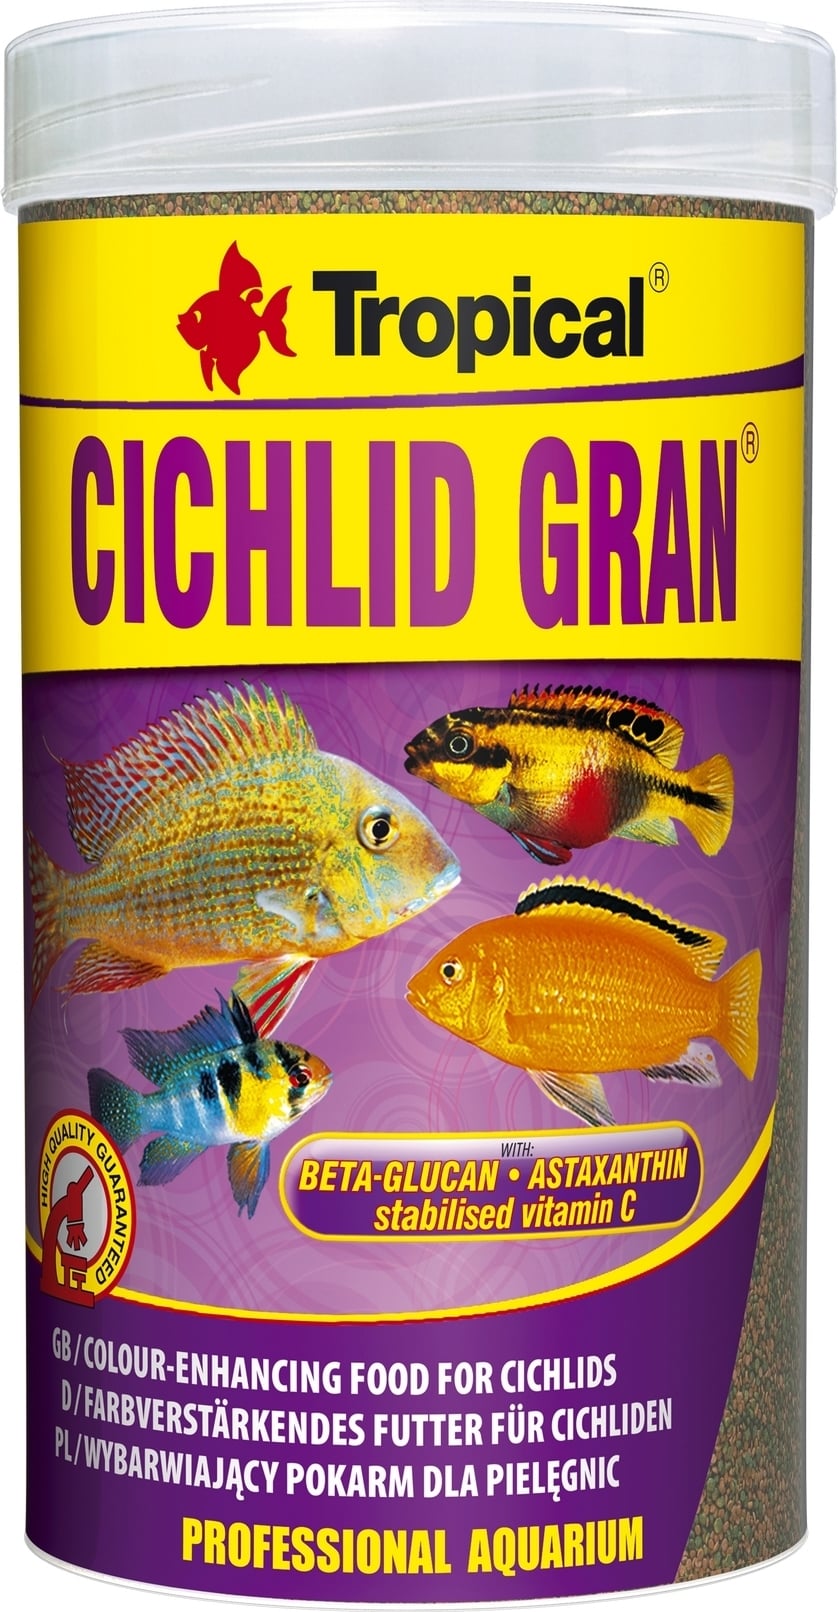 ציקליד מגורען טרופיקל 250 מ''ל Tropical Cichlid Gran